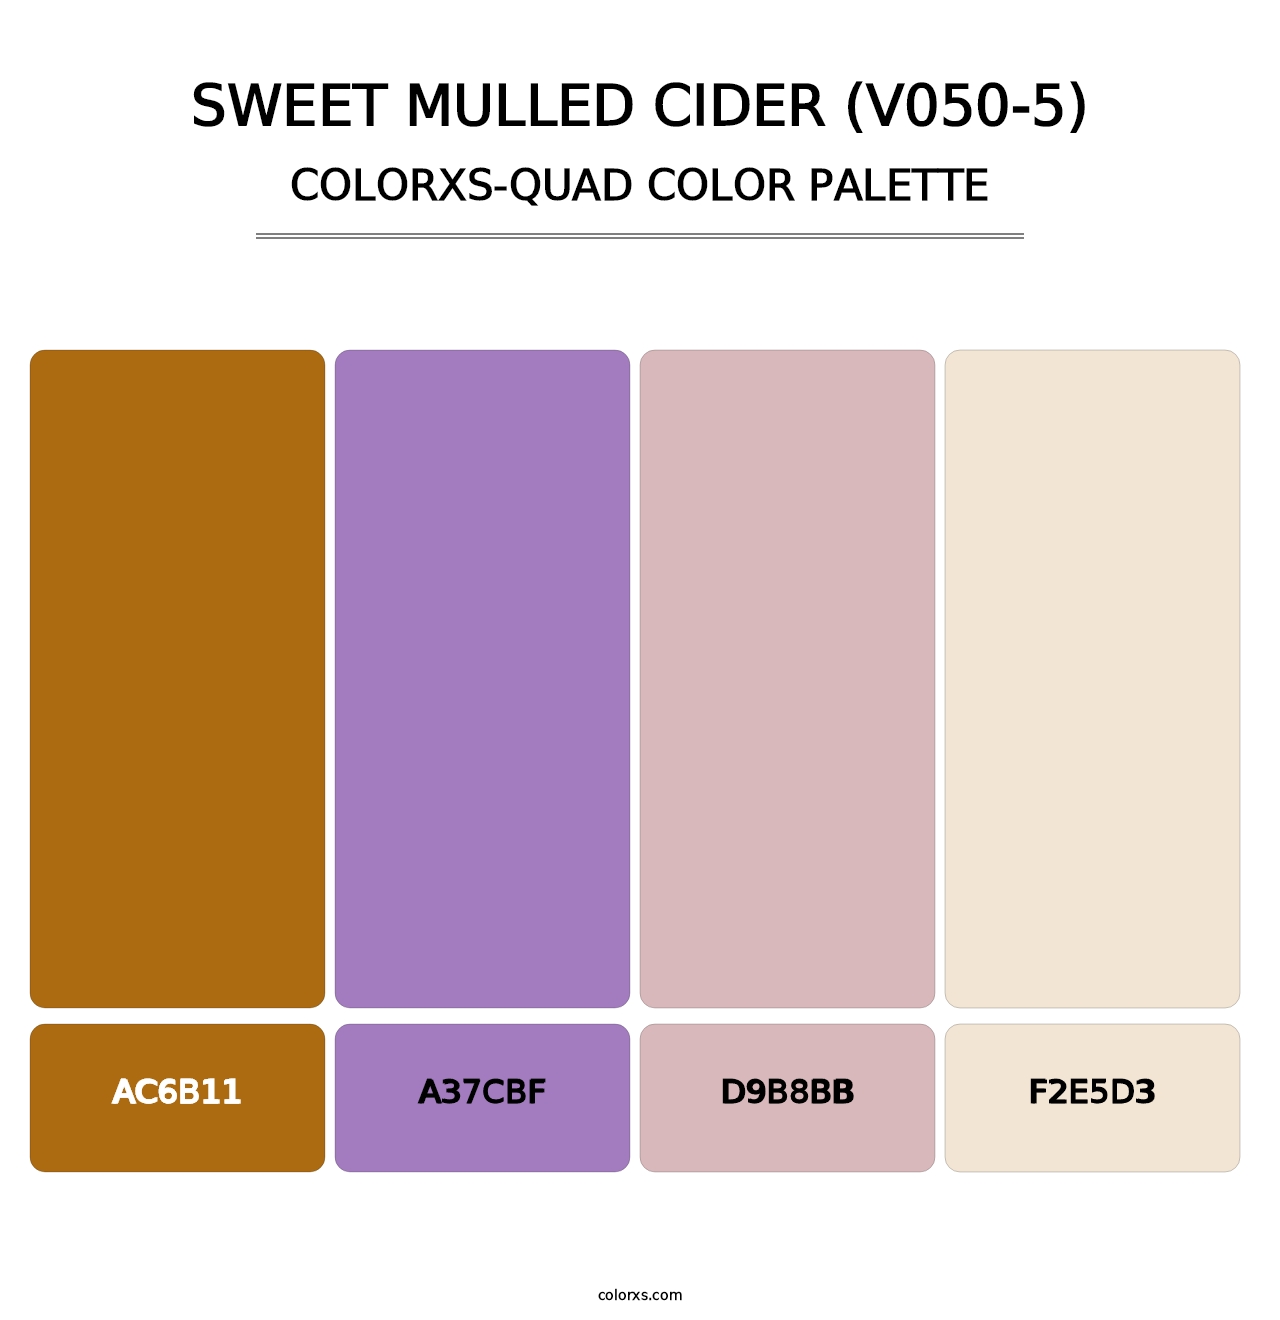 Sweet Mulled Cider (V050-5) - Colorxs Quad Palette